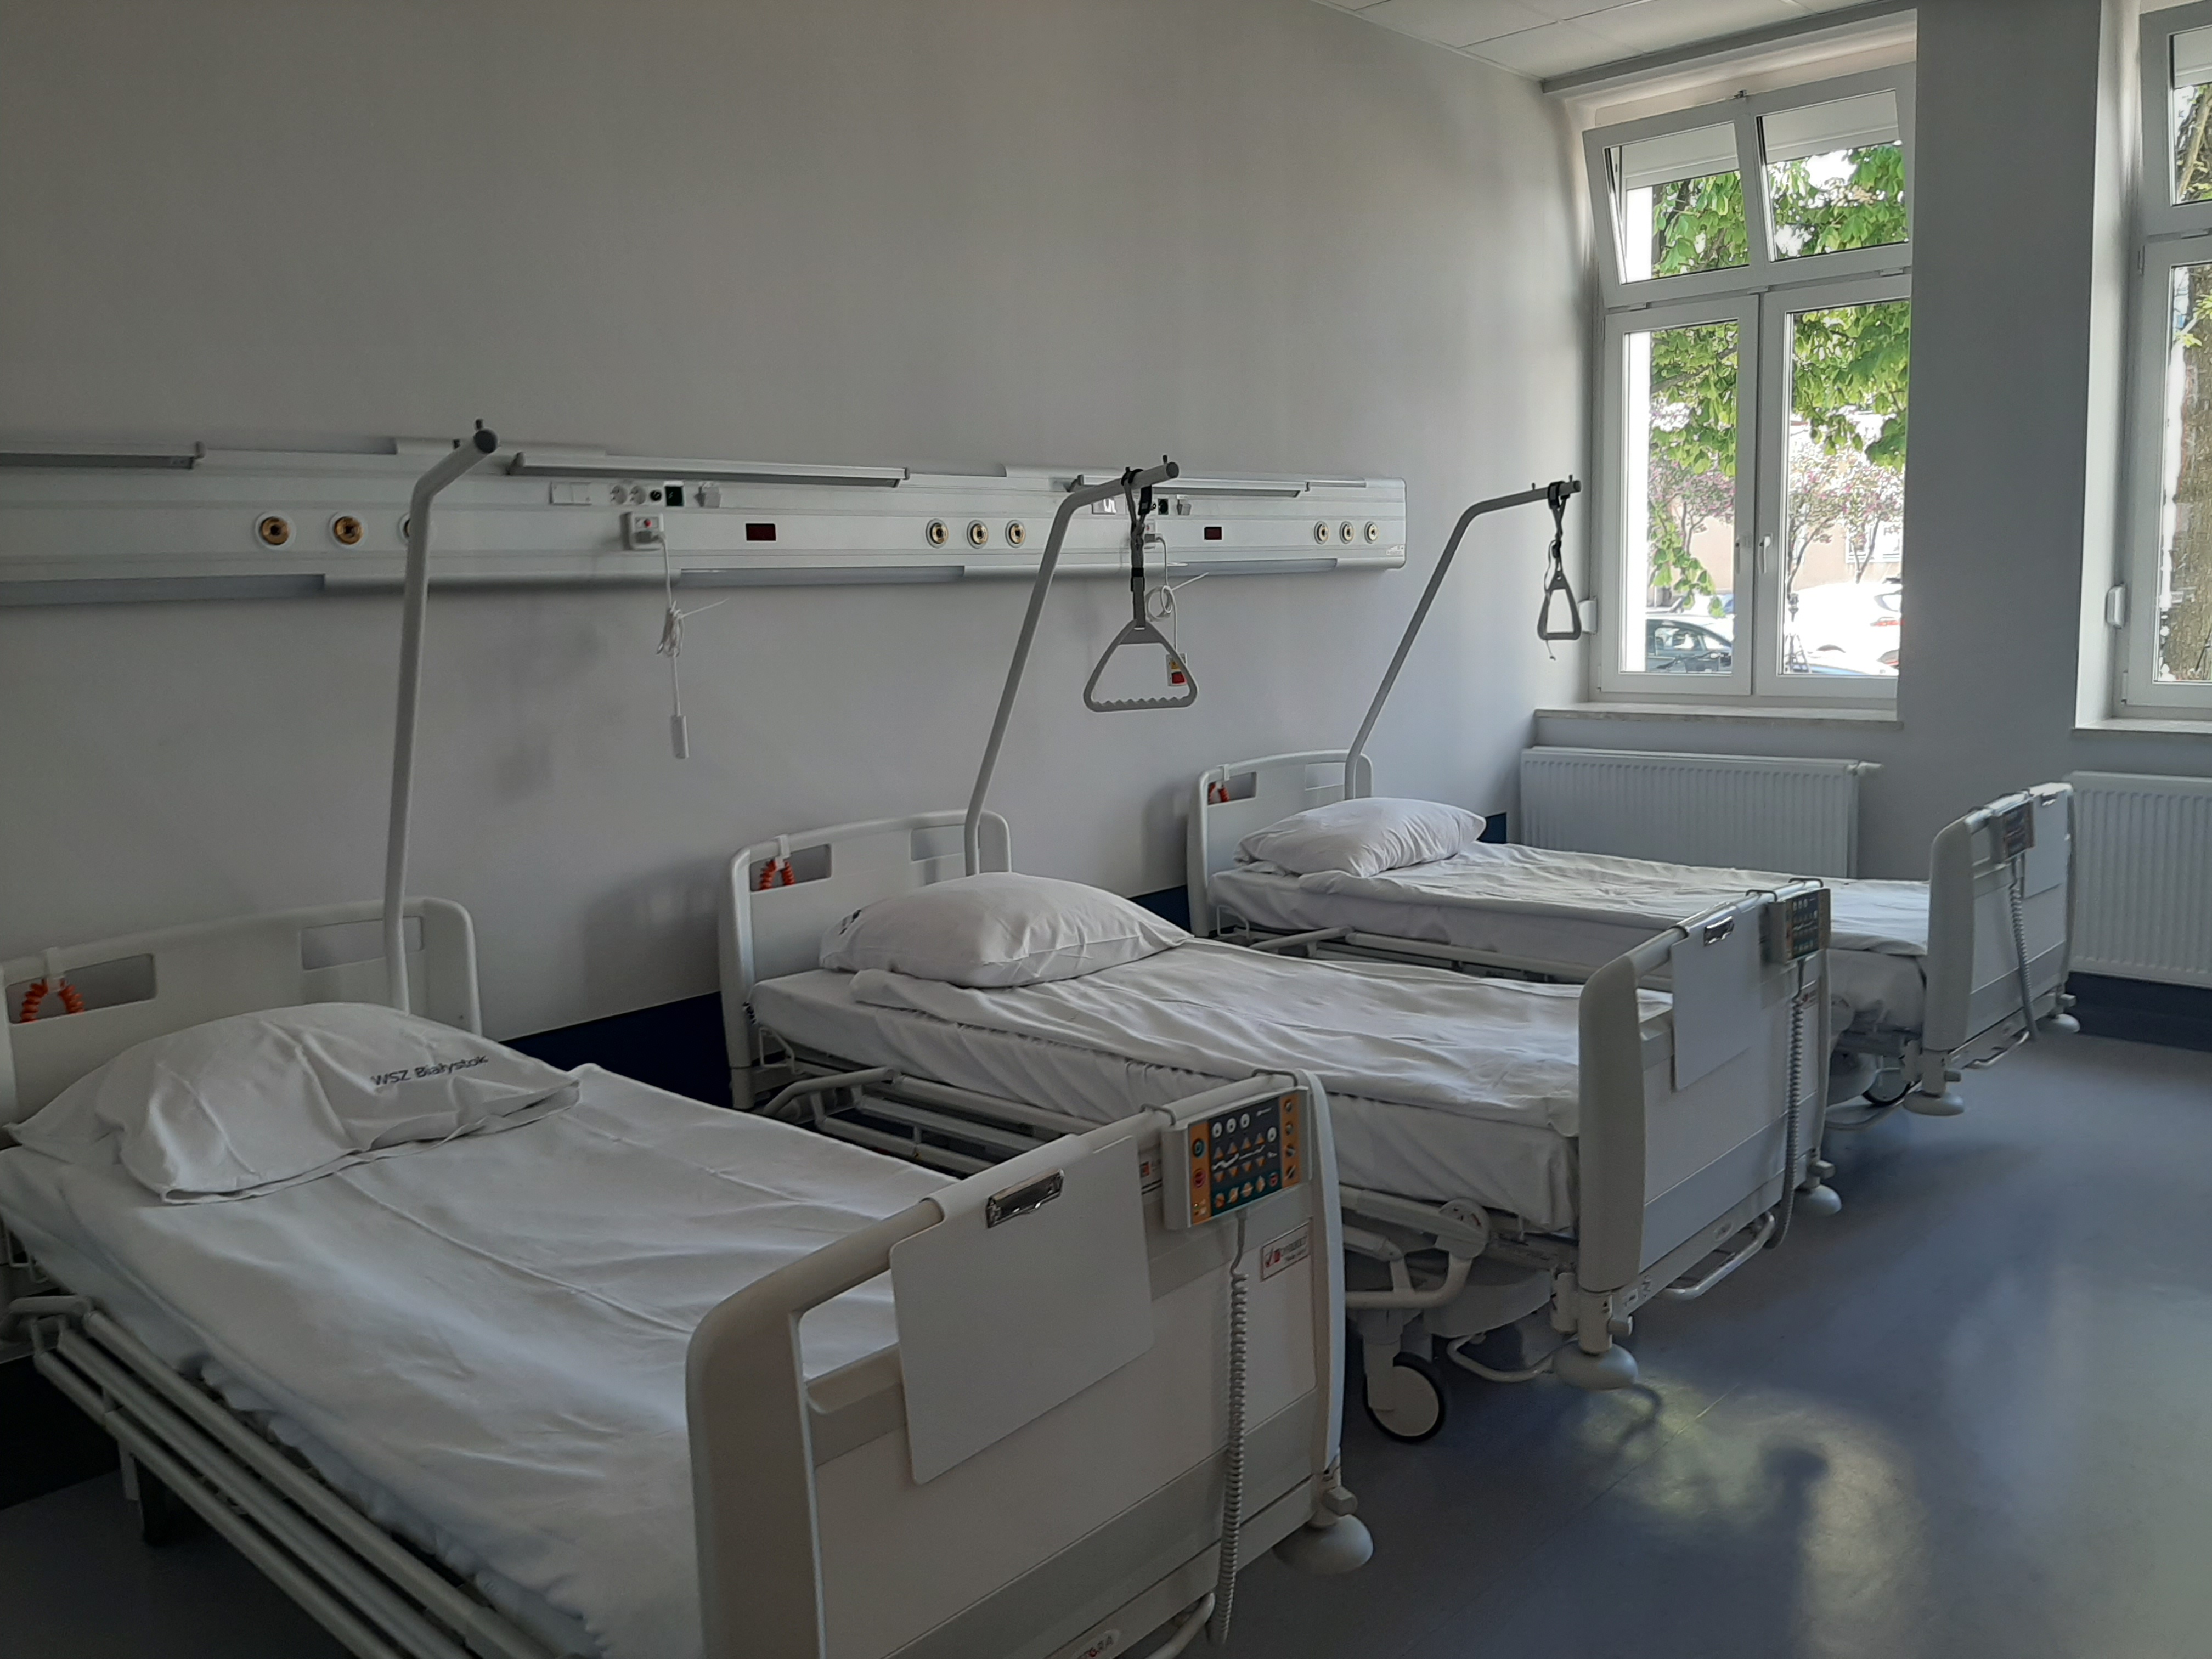 W sali szpitalnej stoją trzy łóżka, na których znajduje się biała pościel. Po prawej stronie jest okno